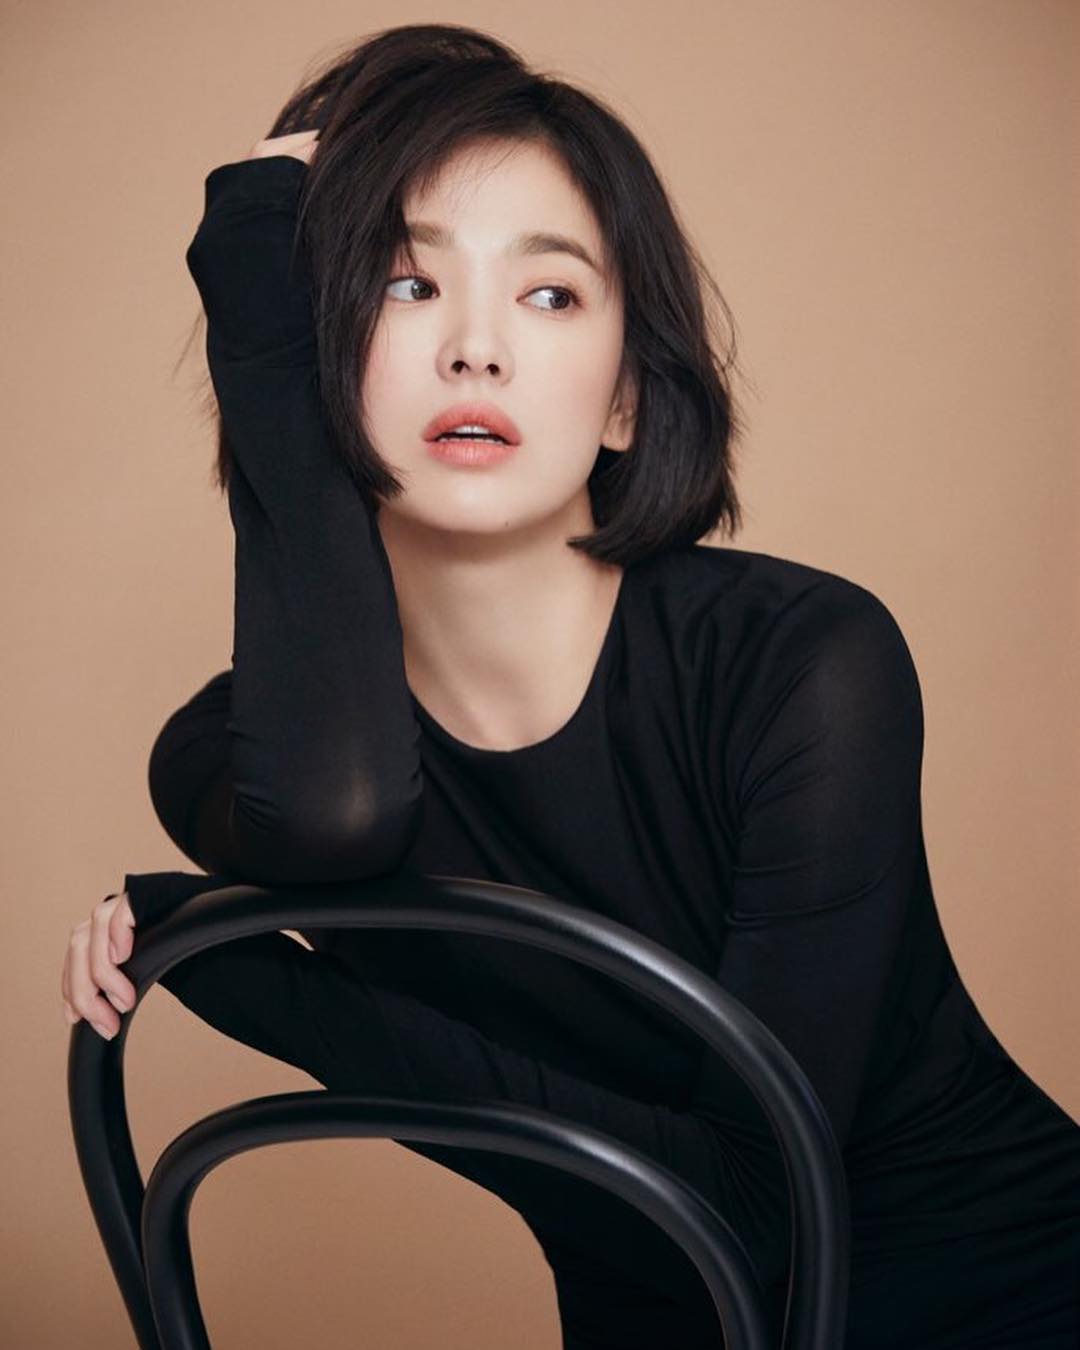 6 kiểu tóc xuất sắc nhất của Song Hye Kyo, chị em U30 'đu' theo thì nhan sắc dễ thăng hạng trong nháy mắt - Ảnh 11